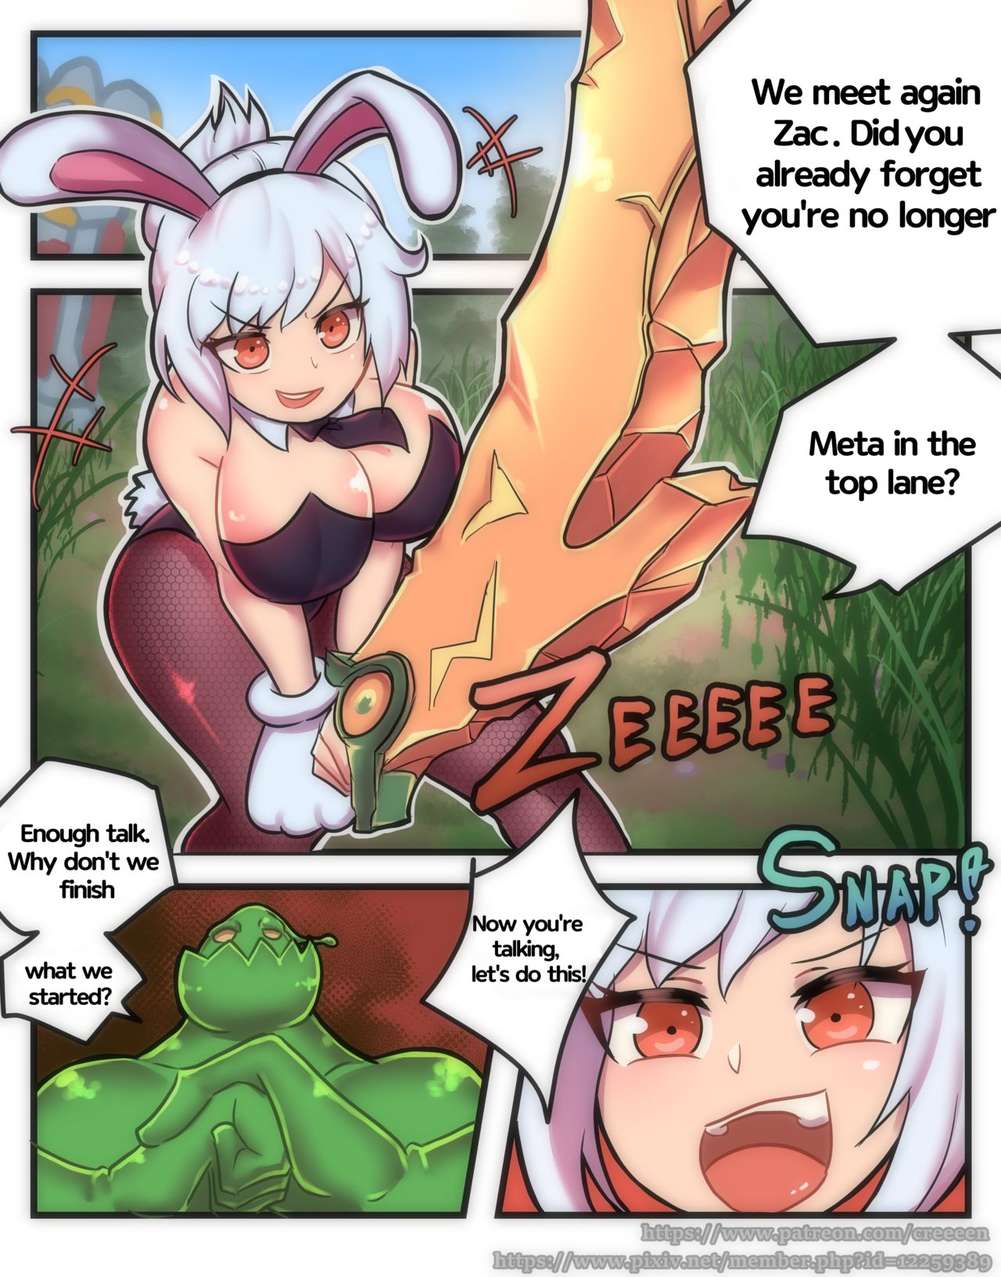 Anime bunny girl porn comic